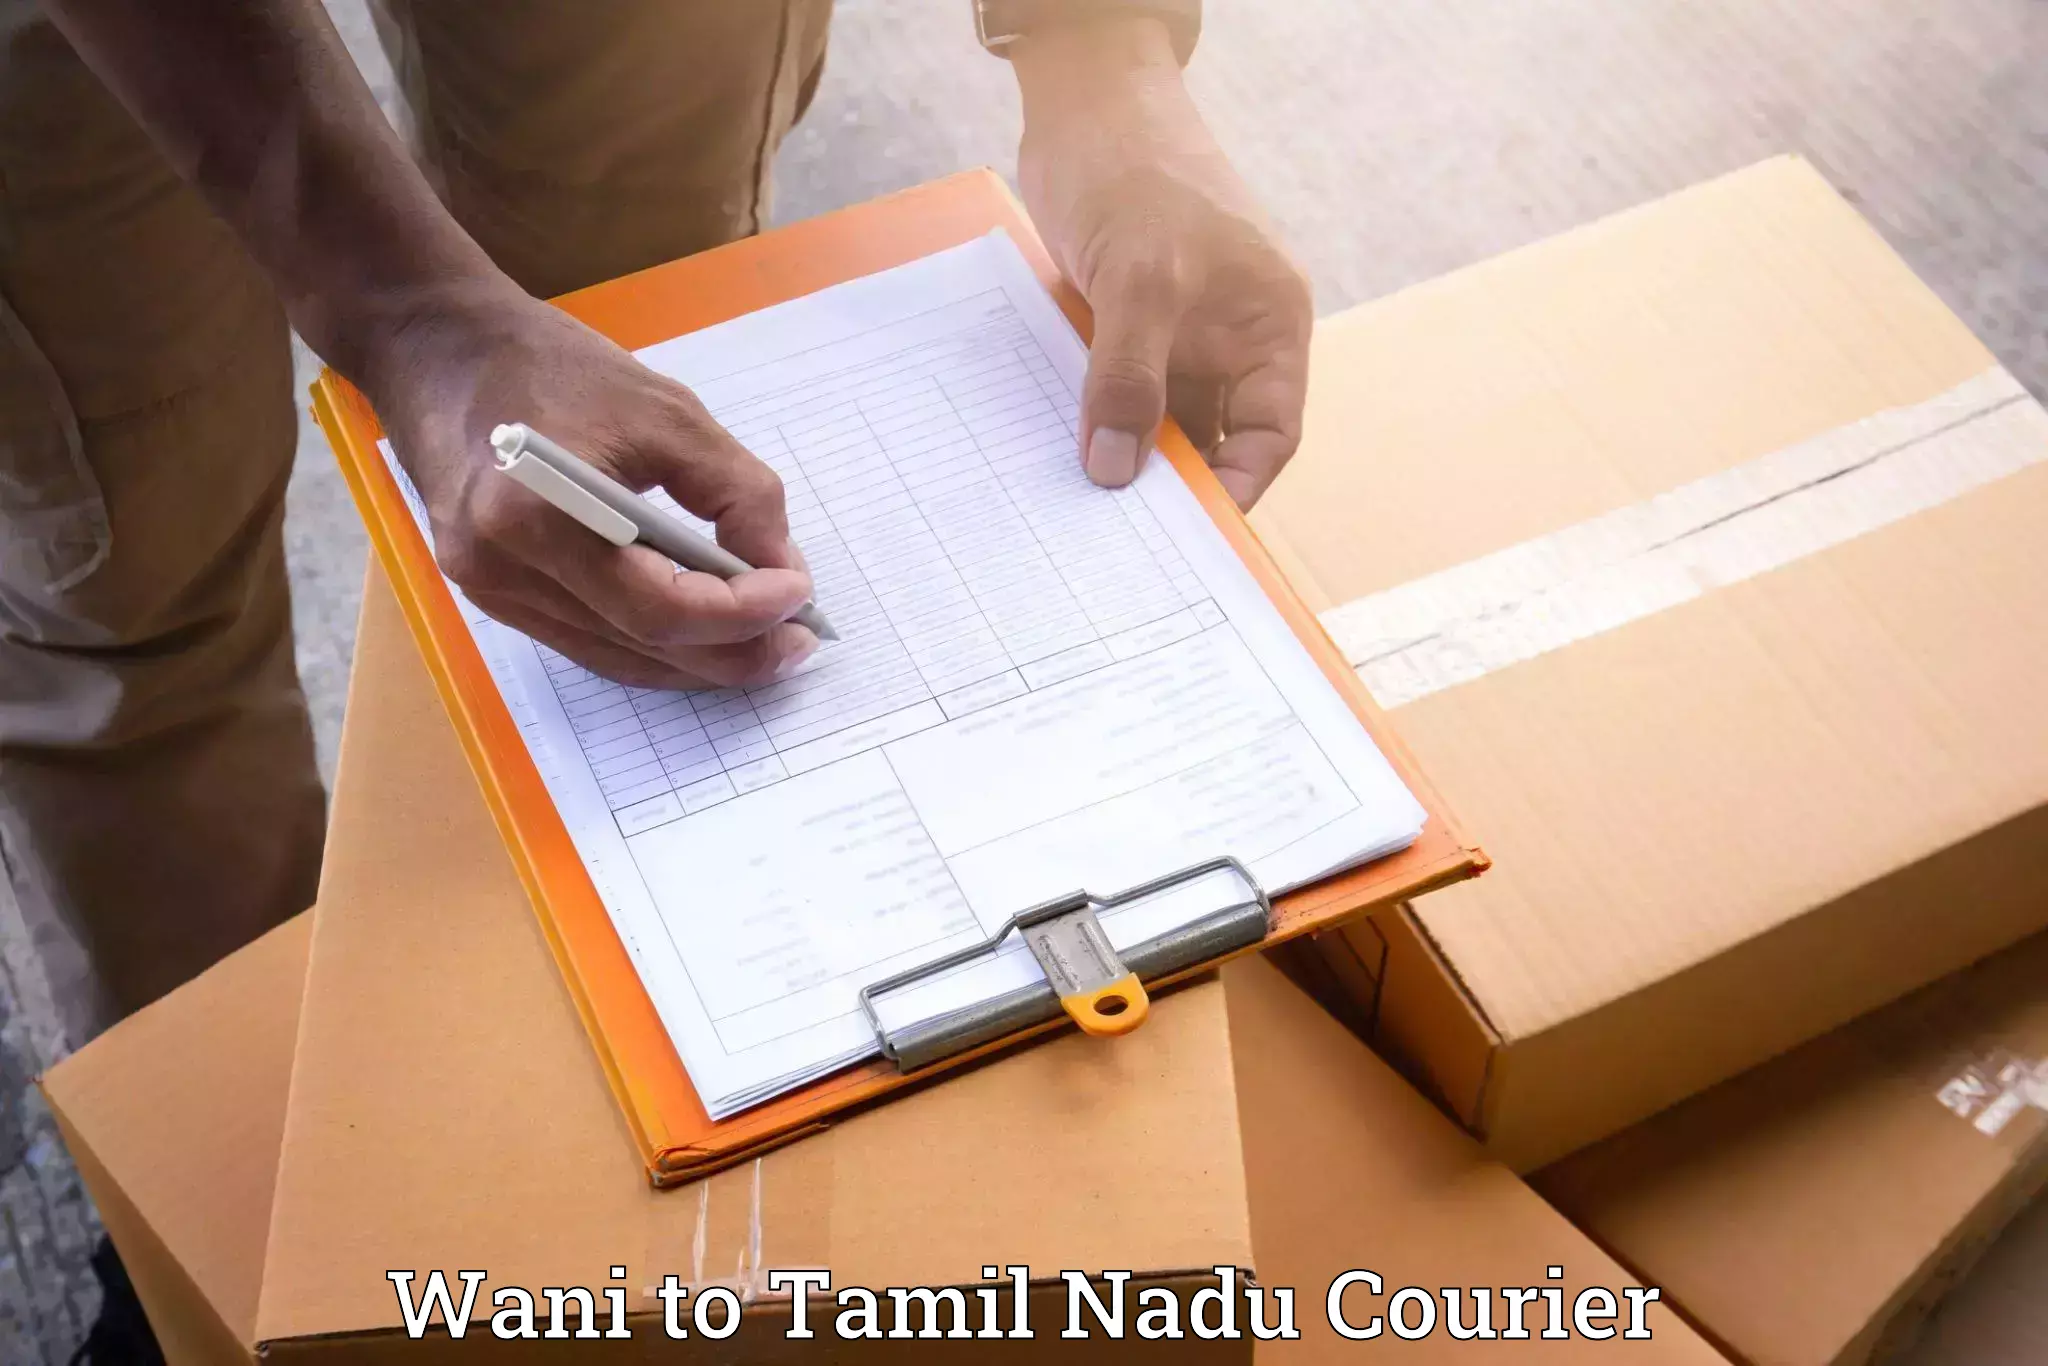 Furniture moving strategies Wani to Tamil Nadu